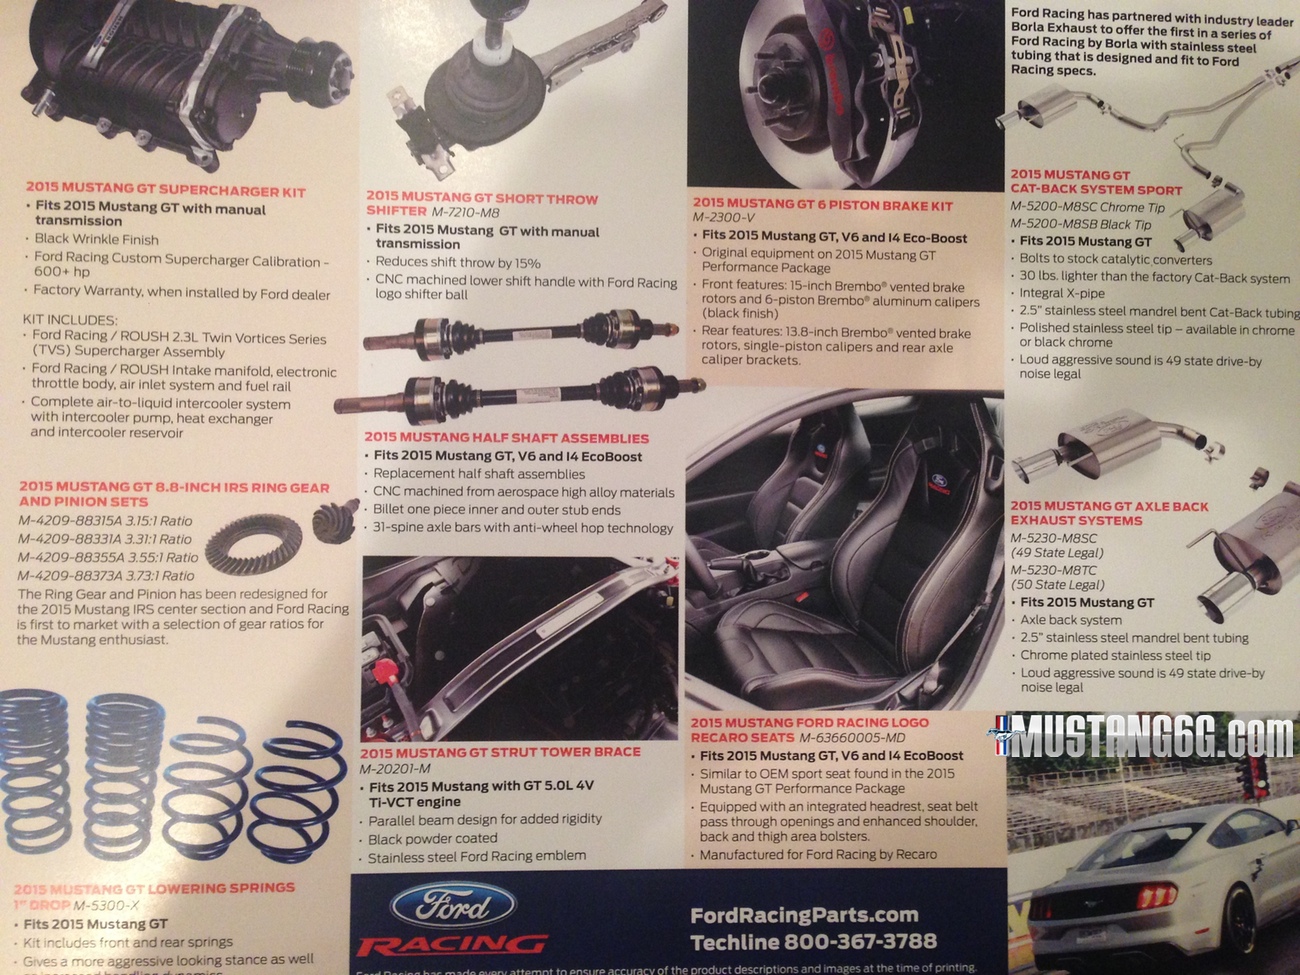 2015 Mustang Ford Racing Parts Brochure.jpeg